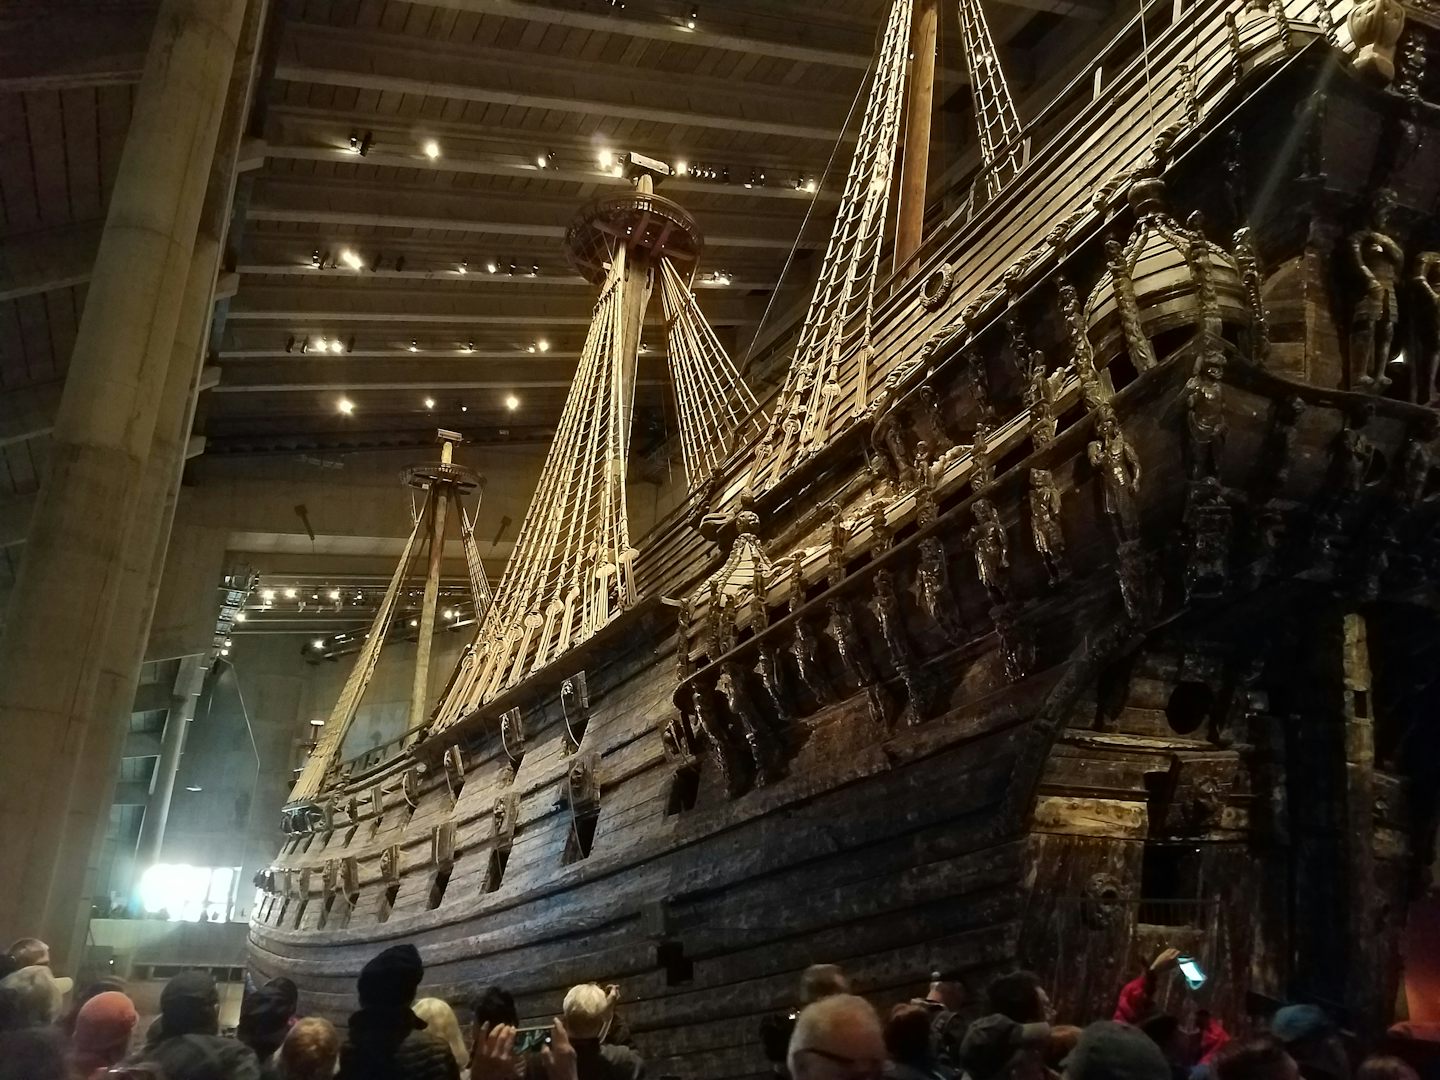 Vasa the ship in Stockholms